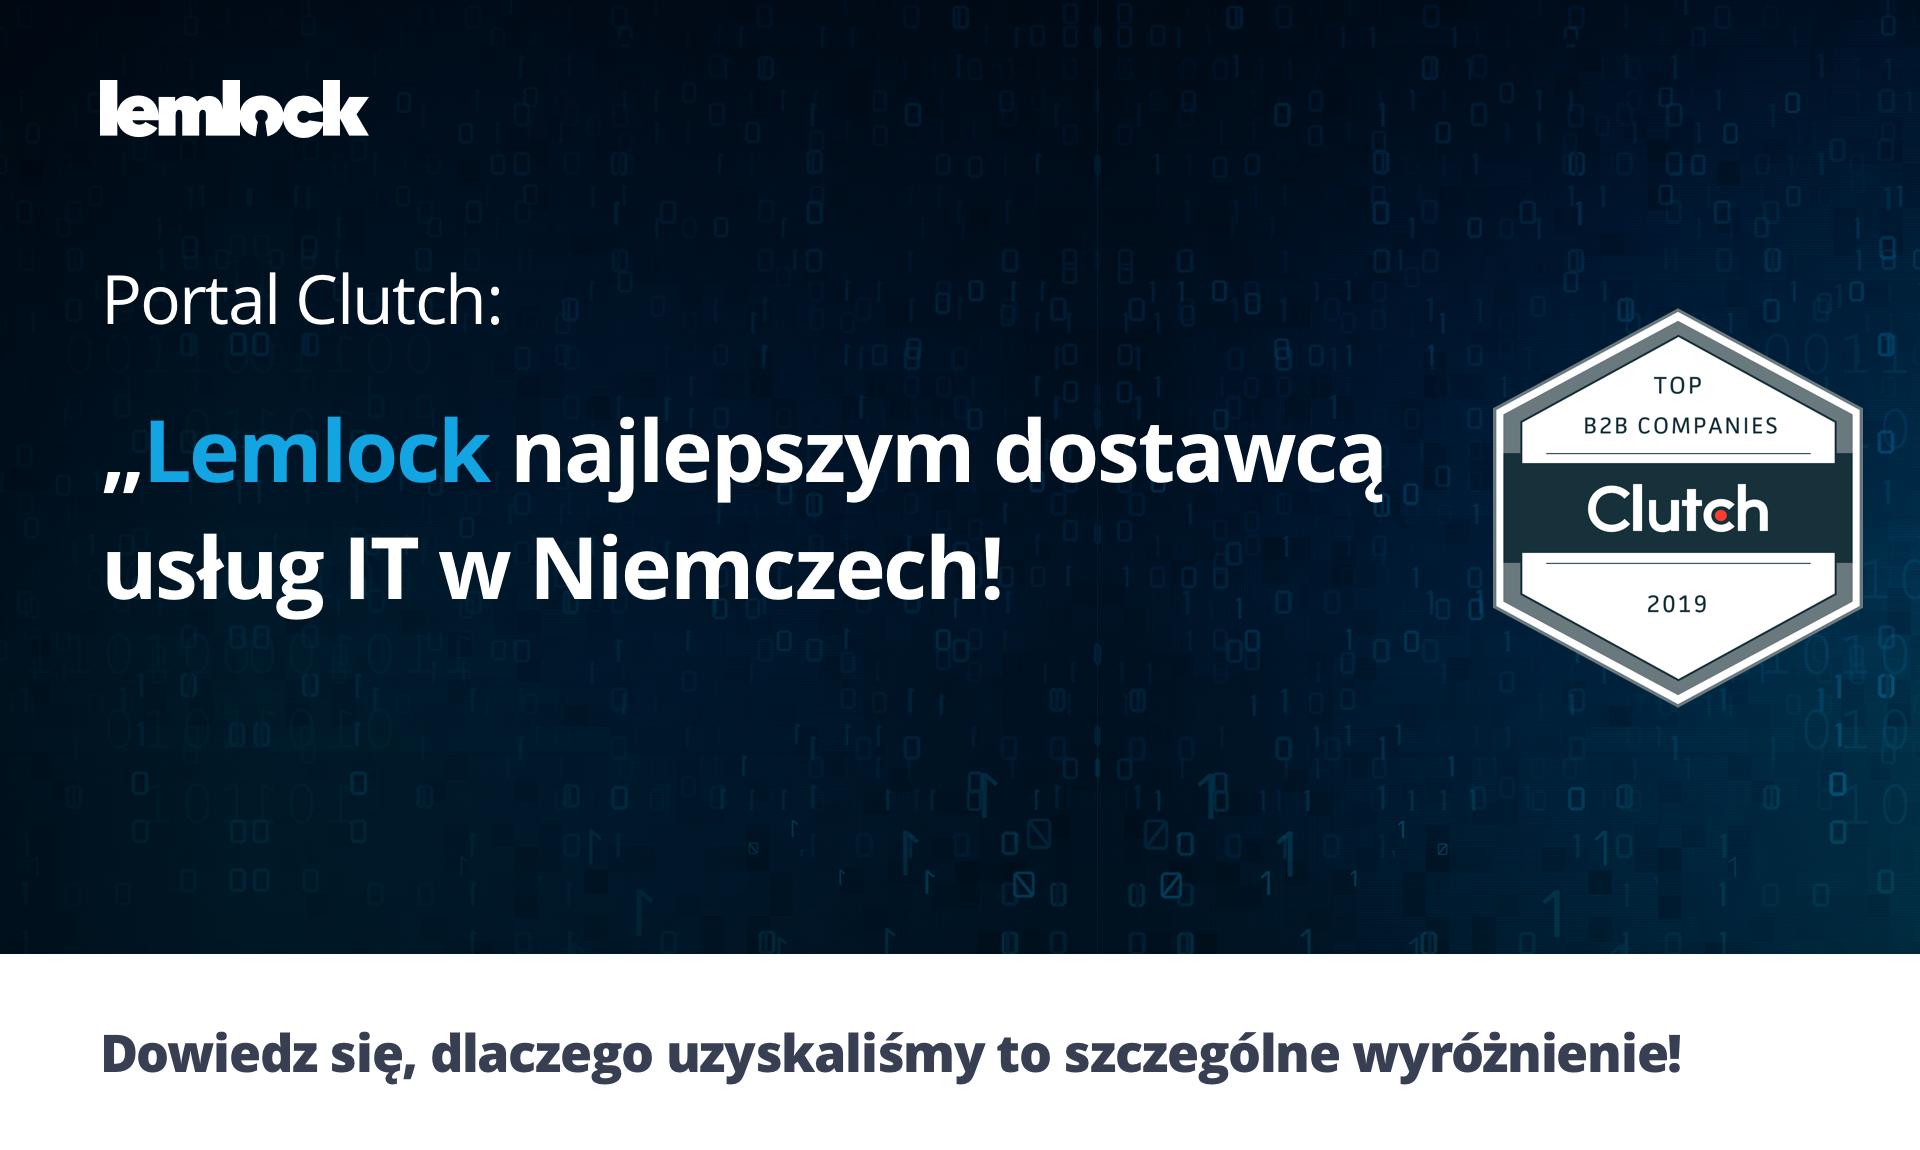 Lemlock uznany przez portal Clutch za najlepszego dostawcę usług IT w Niemczech